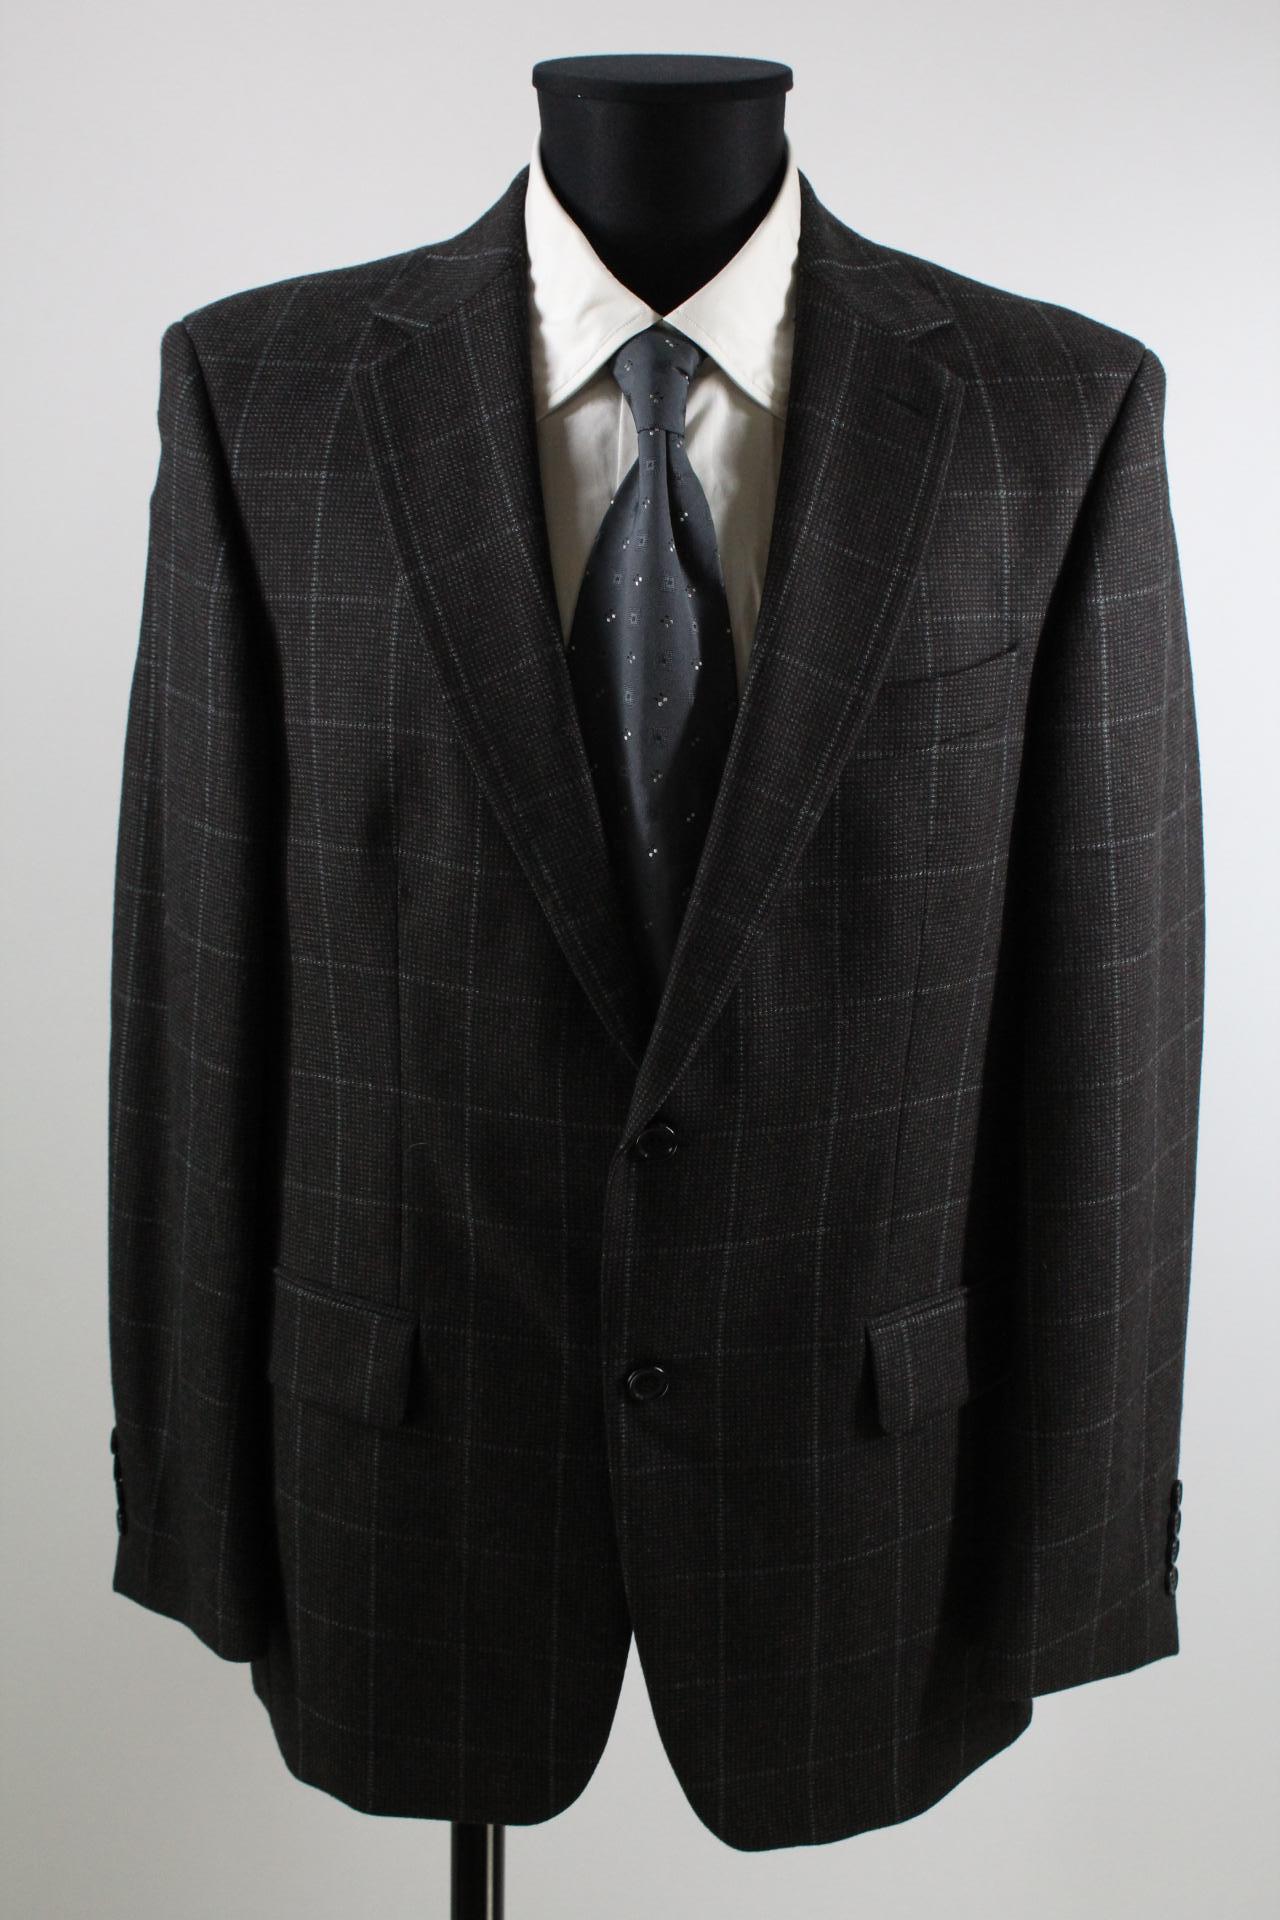 Pierre Cardin Tweed-Sakko schwarz/blau Größe 50